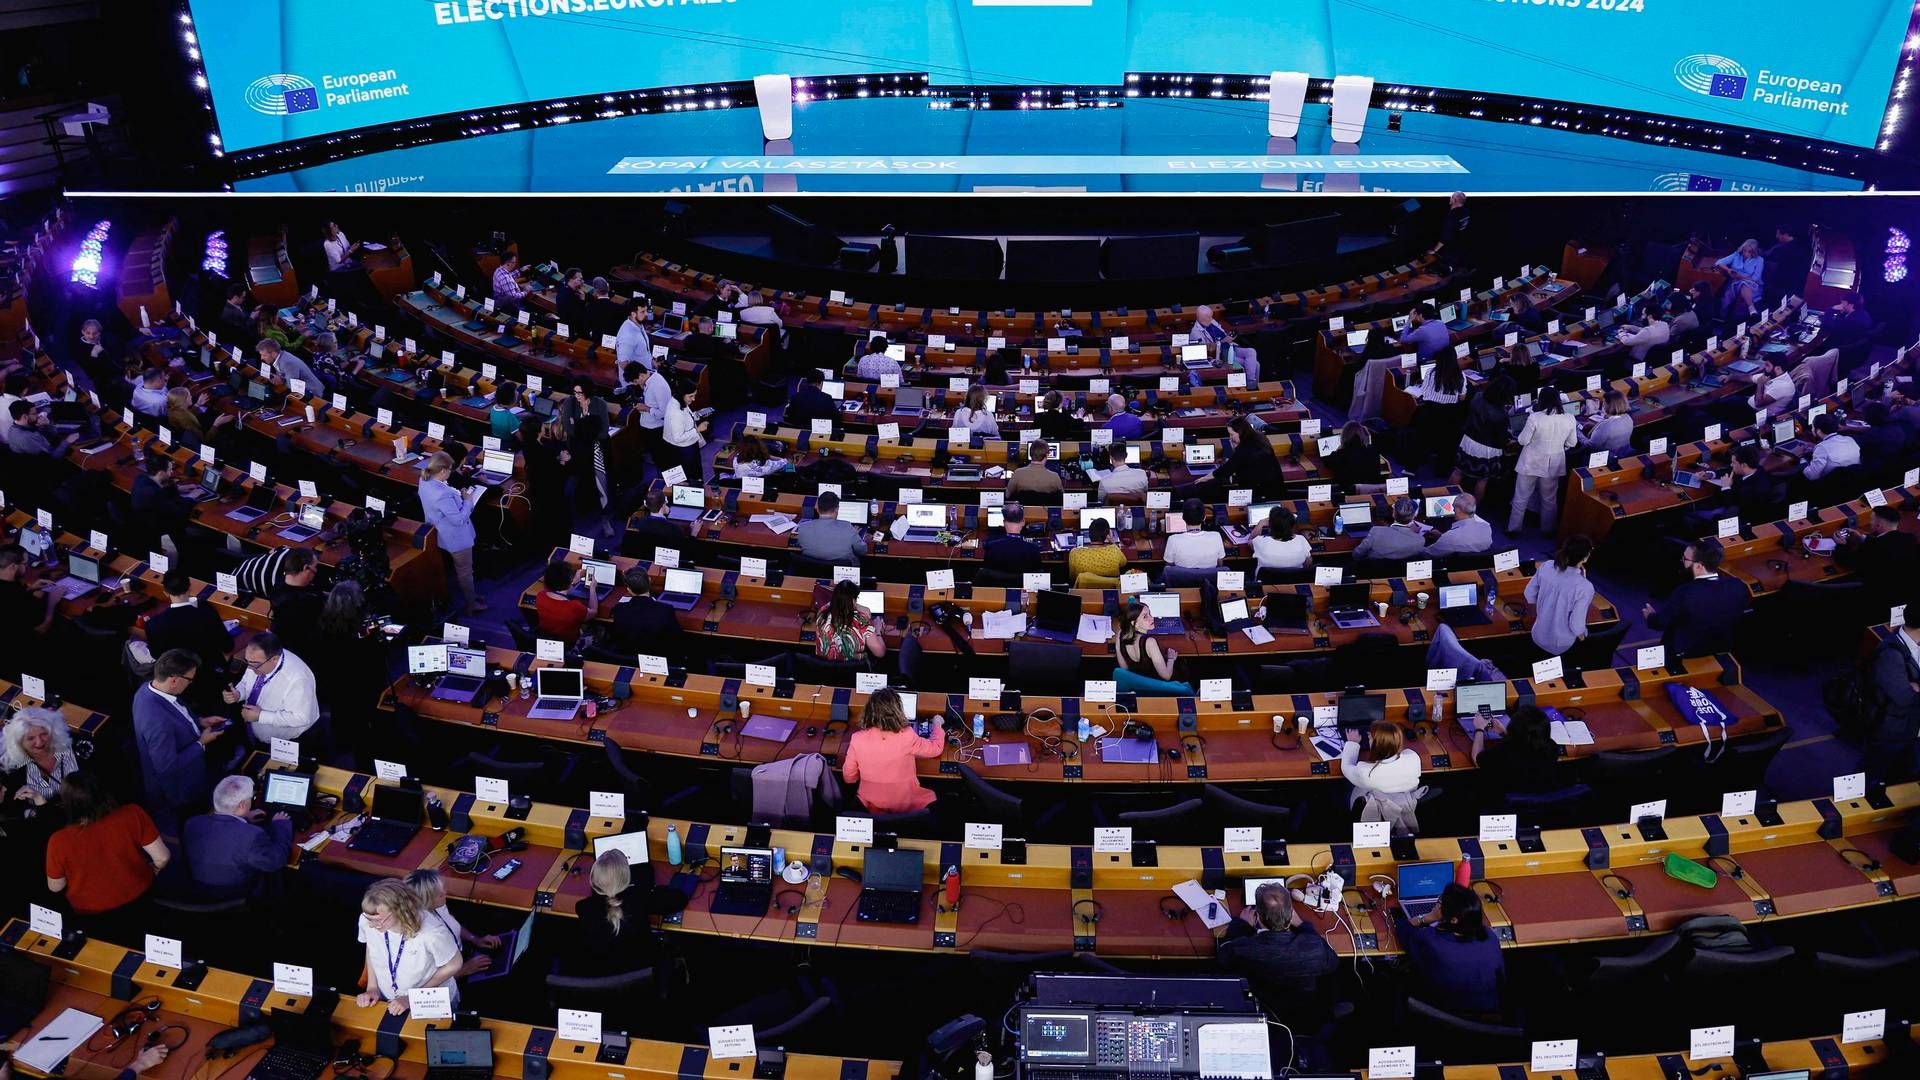 Europa-Parlamentet har 720 pladser. Her ses et billede fra valgaftenen søndag. | Foto: Kenzo Tribouillard/AFP/Ritzau Scanpix